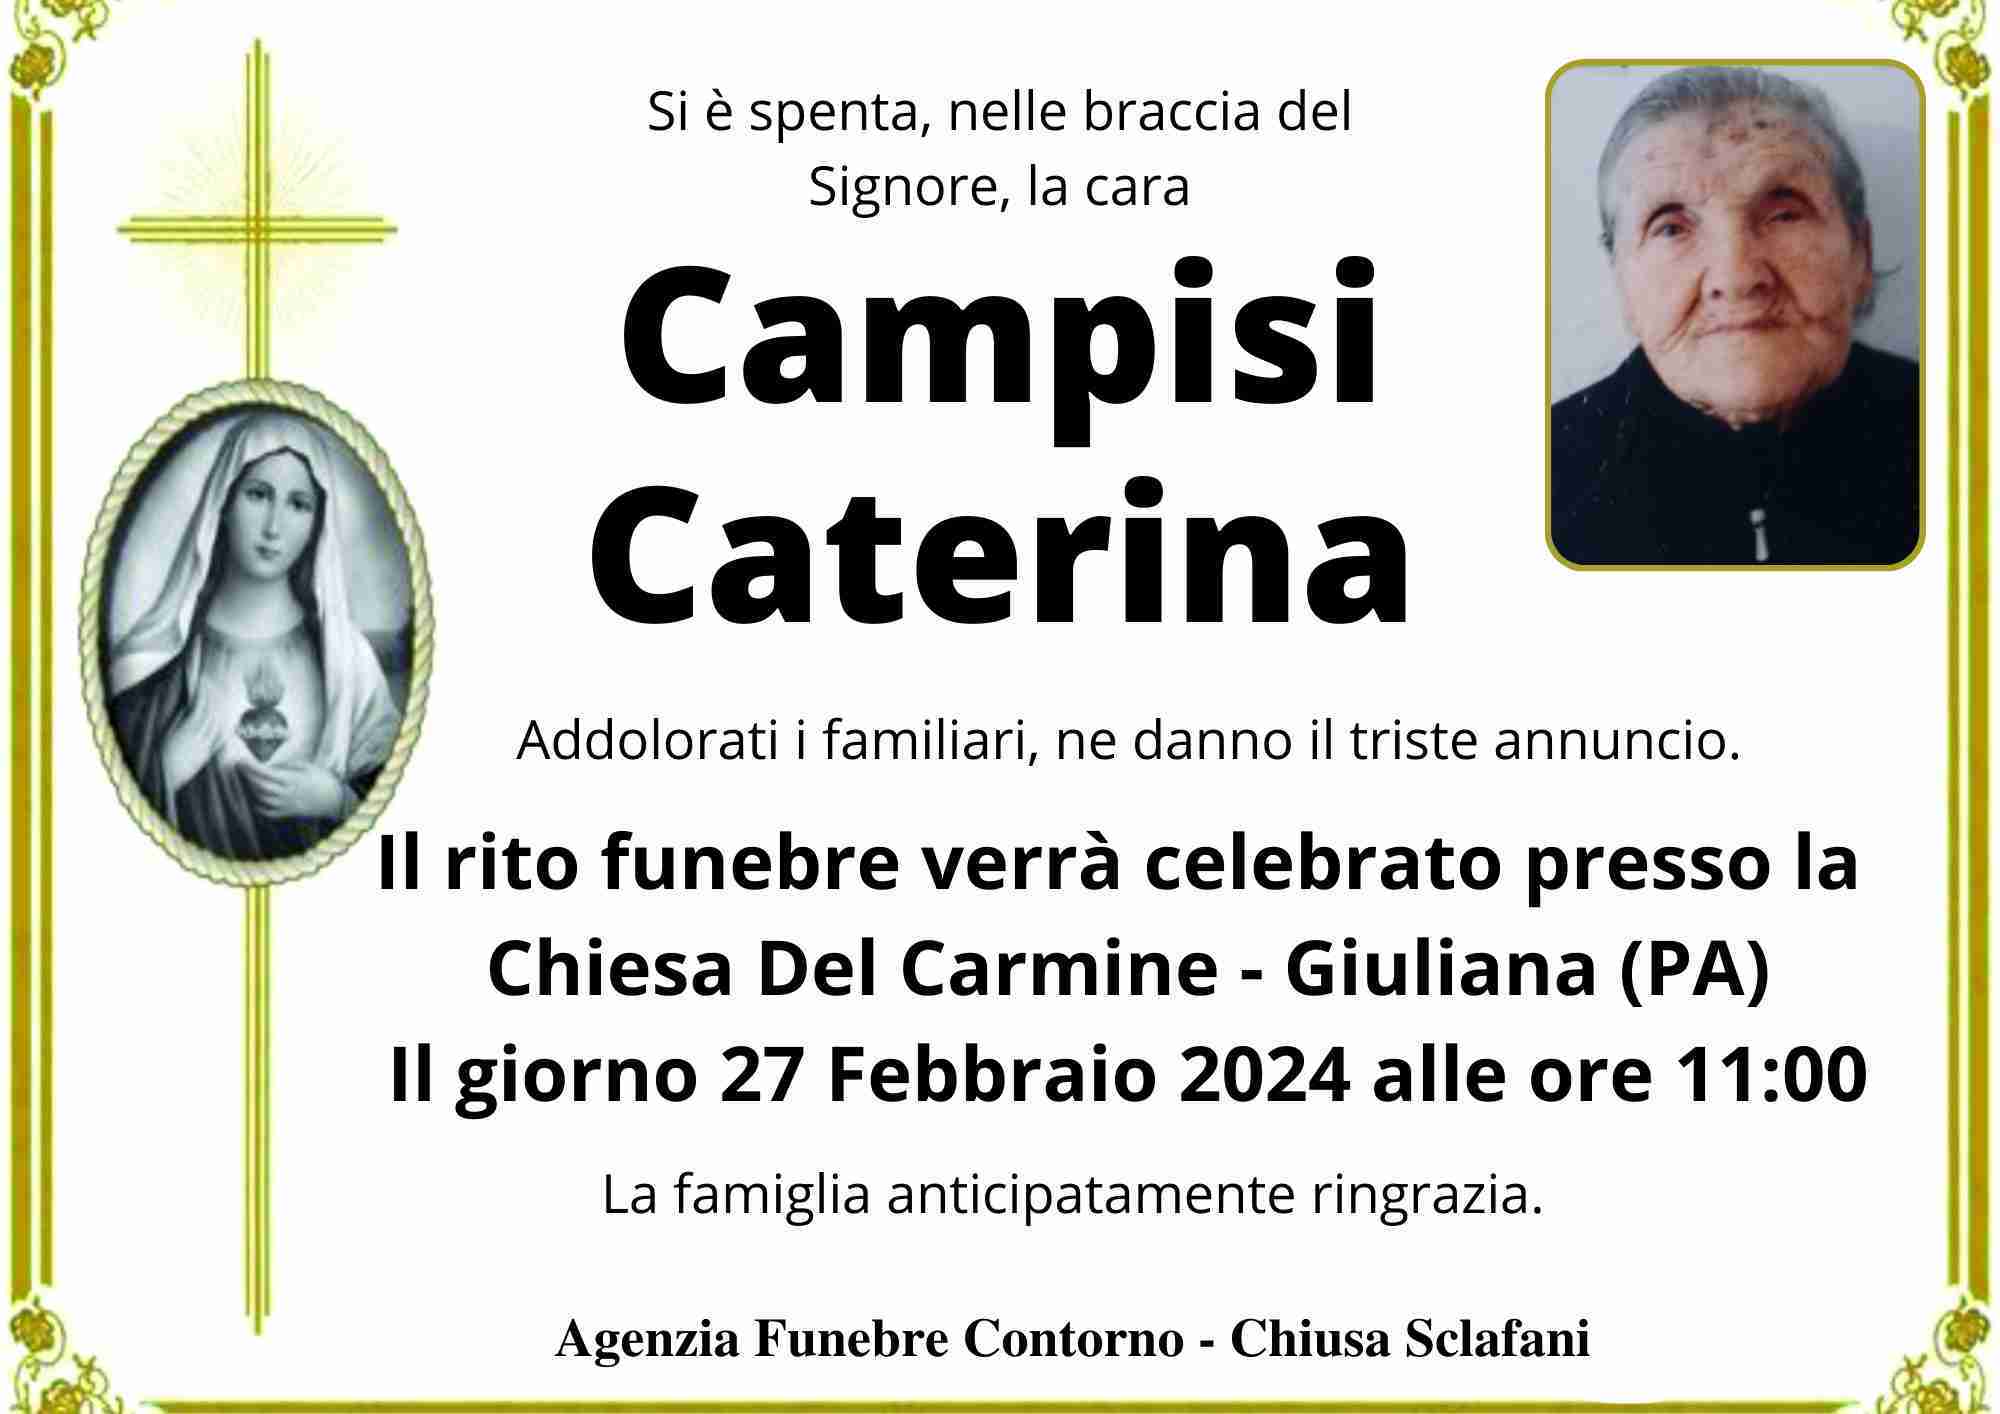 Caterina Campisi